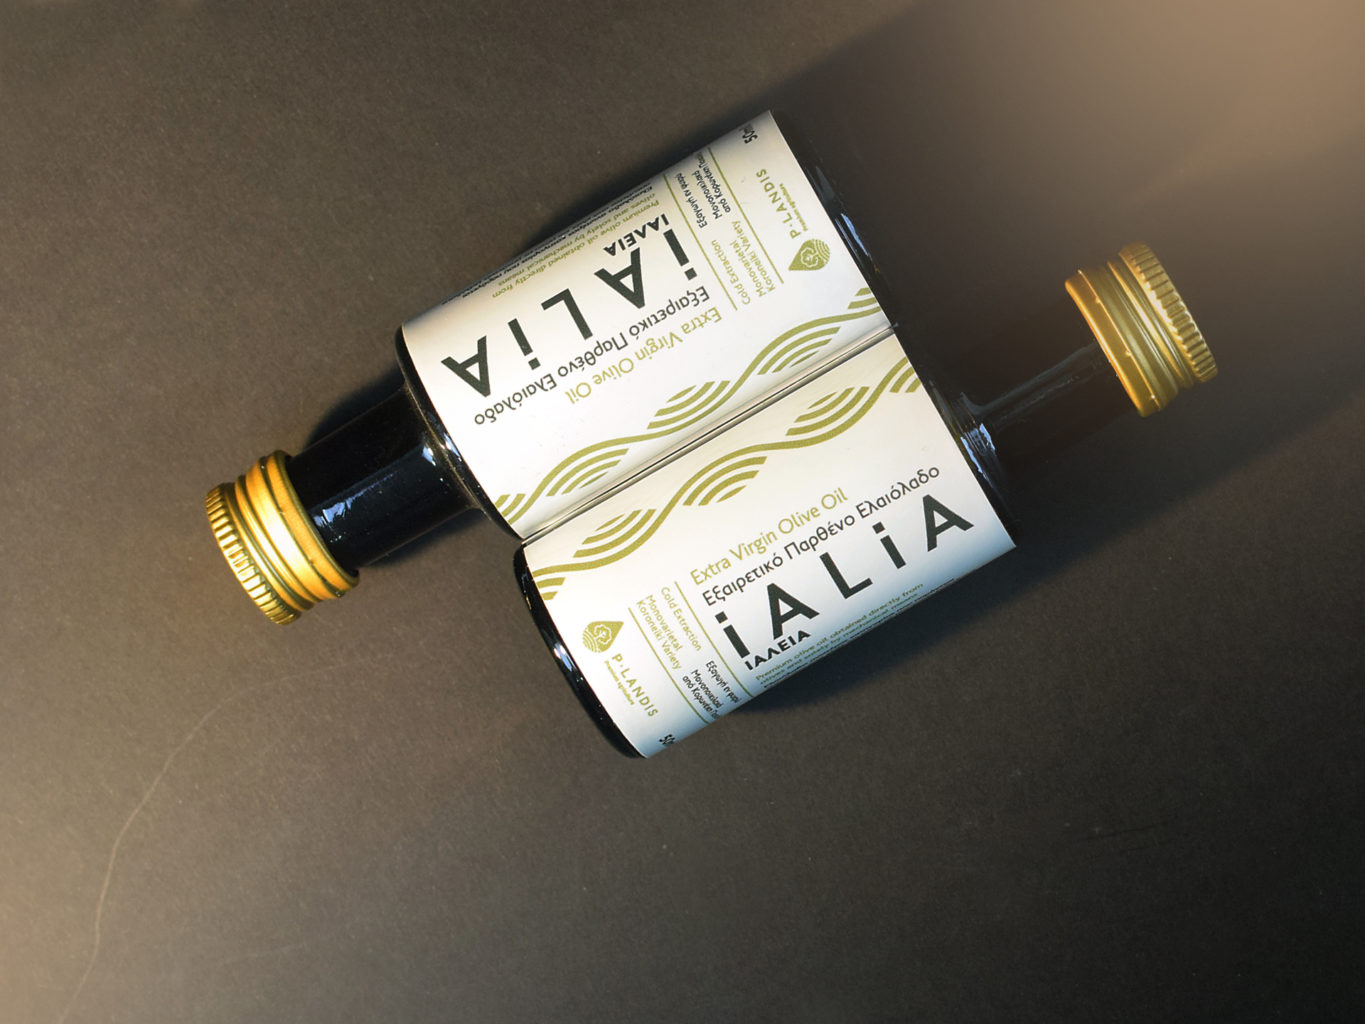 P-Landis premium agriculture - ialia olive oil - packaging